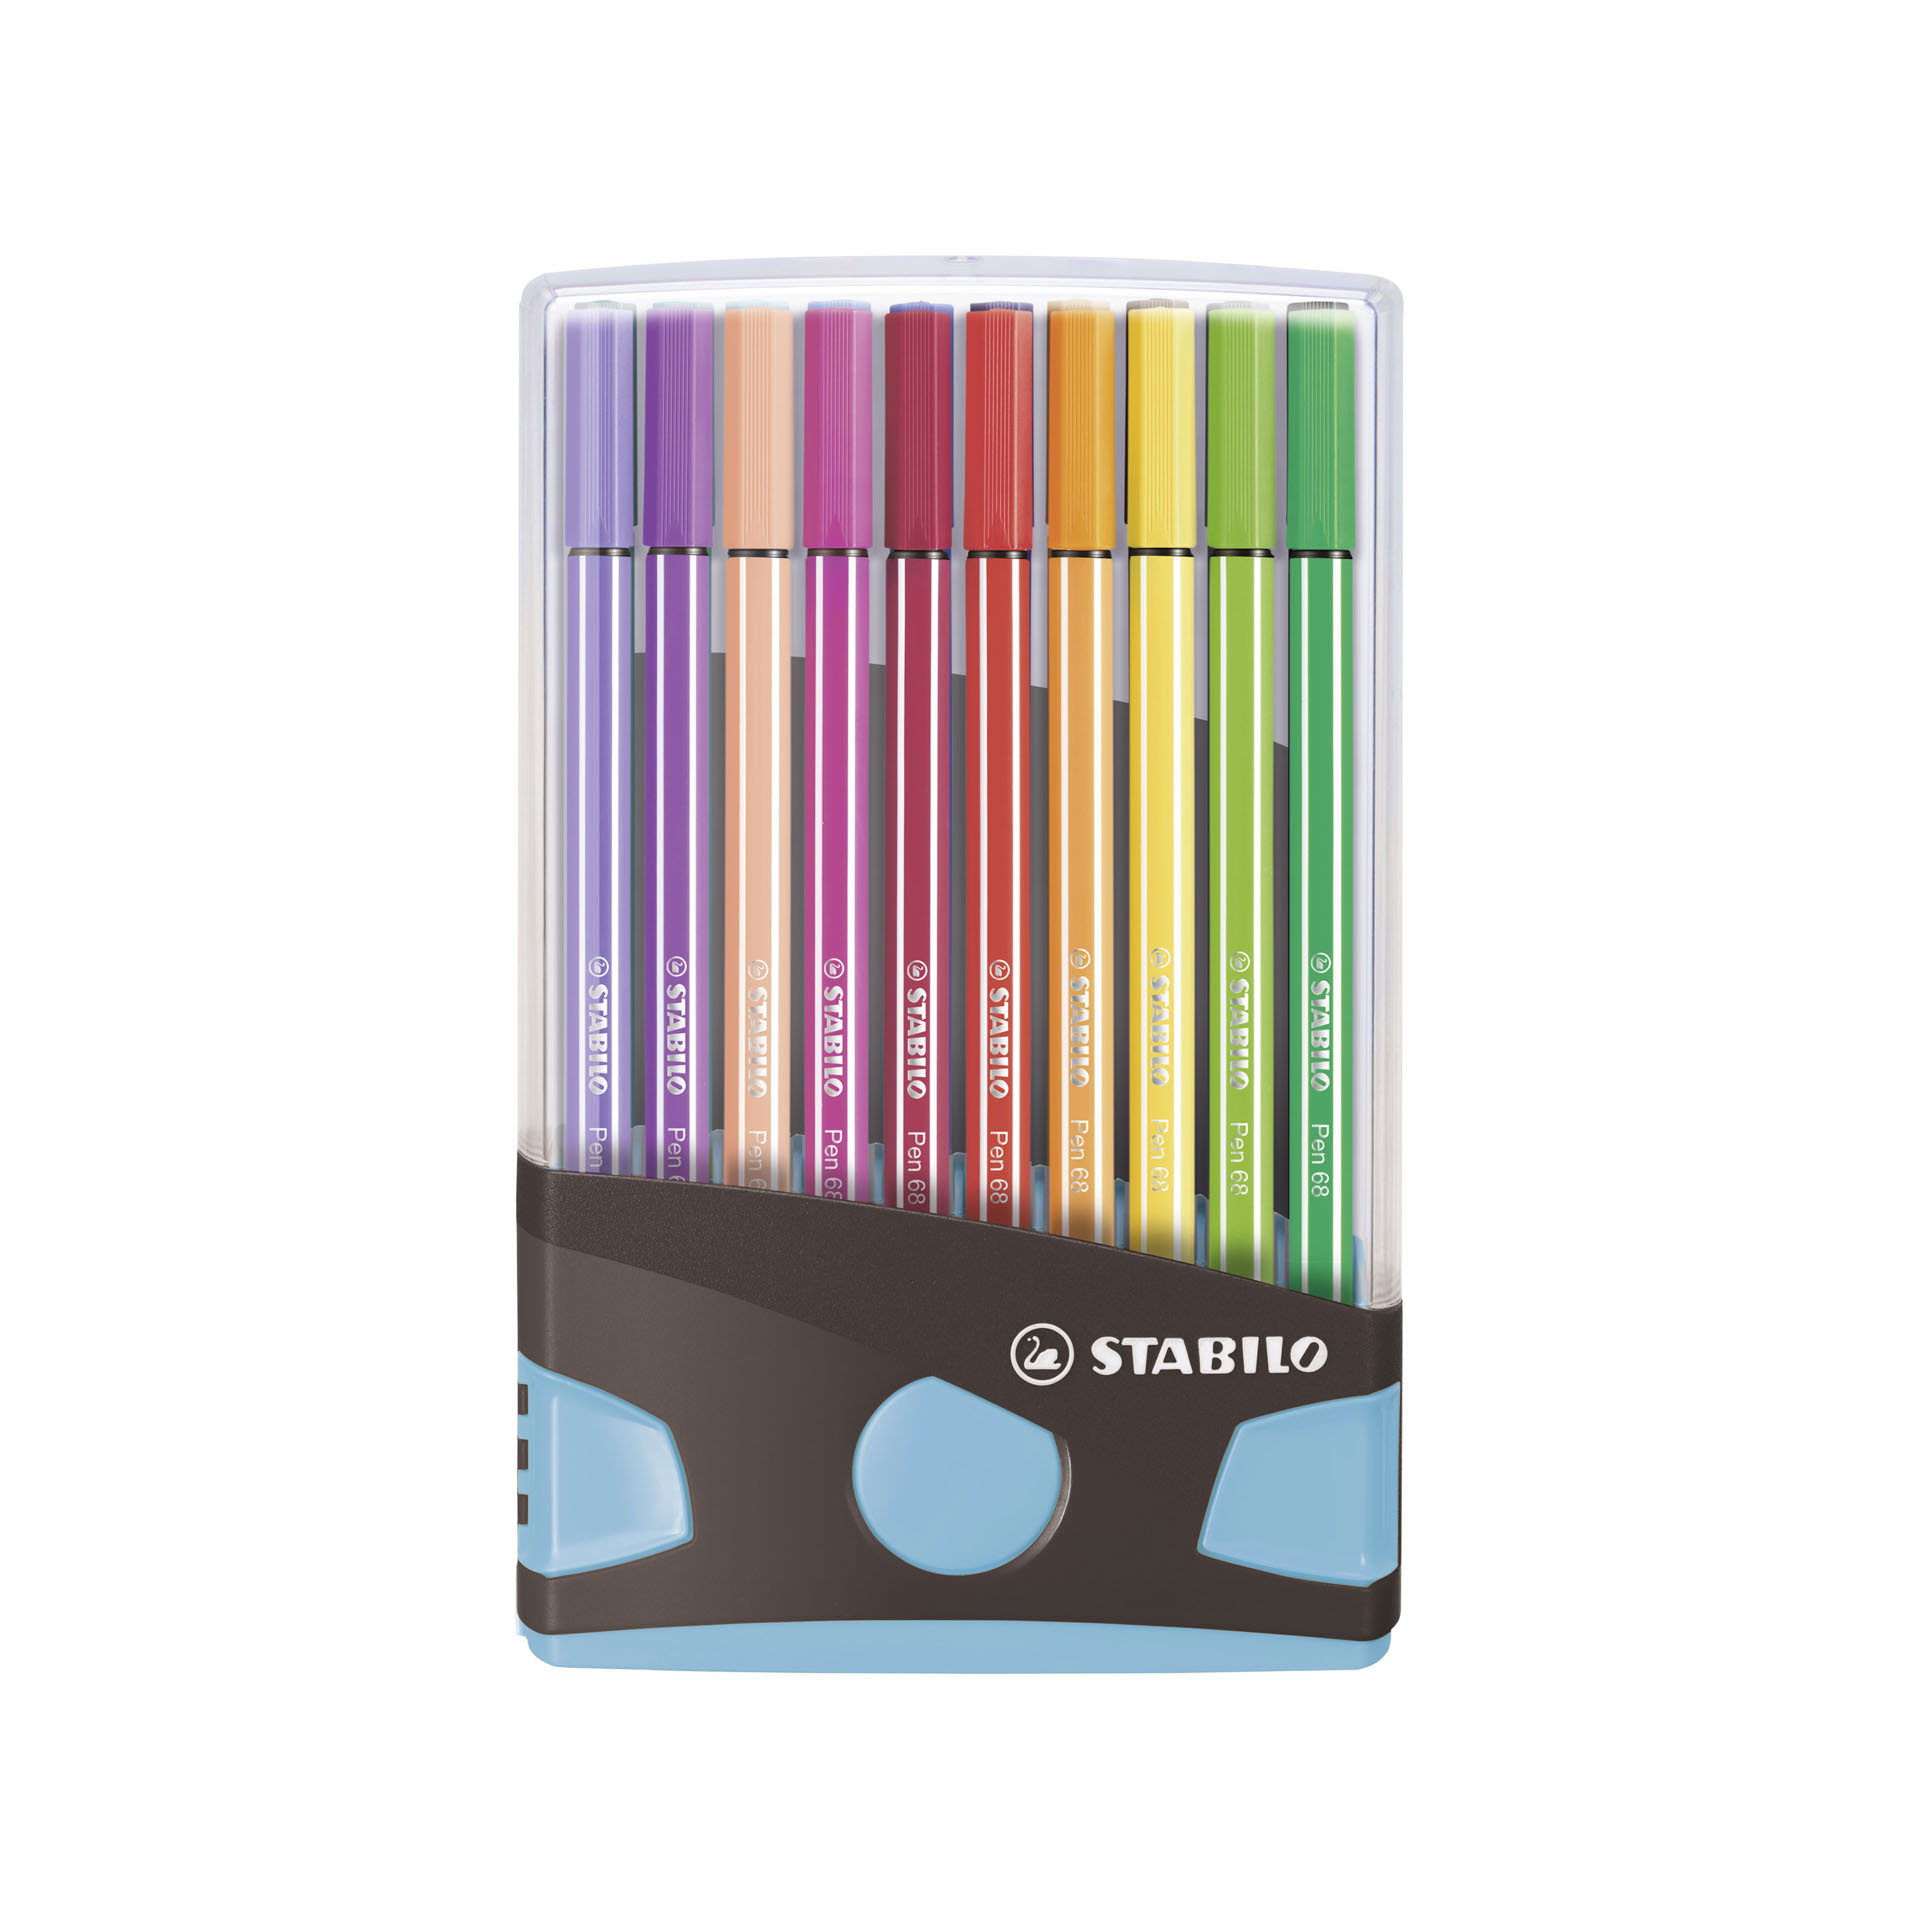 Stabilo Pen 68 Colorparade - Astuccio Desk-set Da 20 Antracite/azzurro - 20 Colori Assortiti, , large